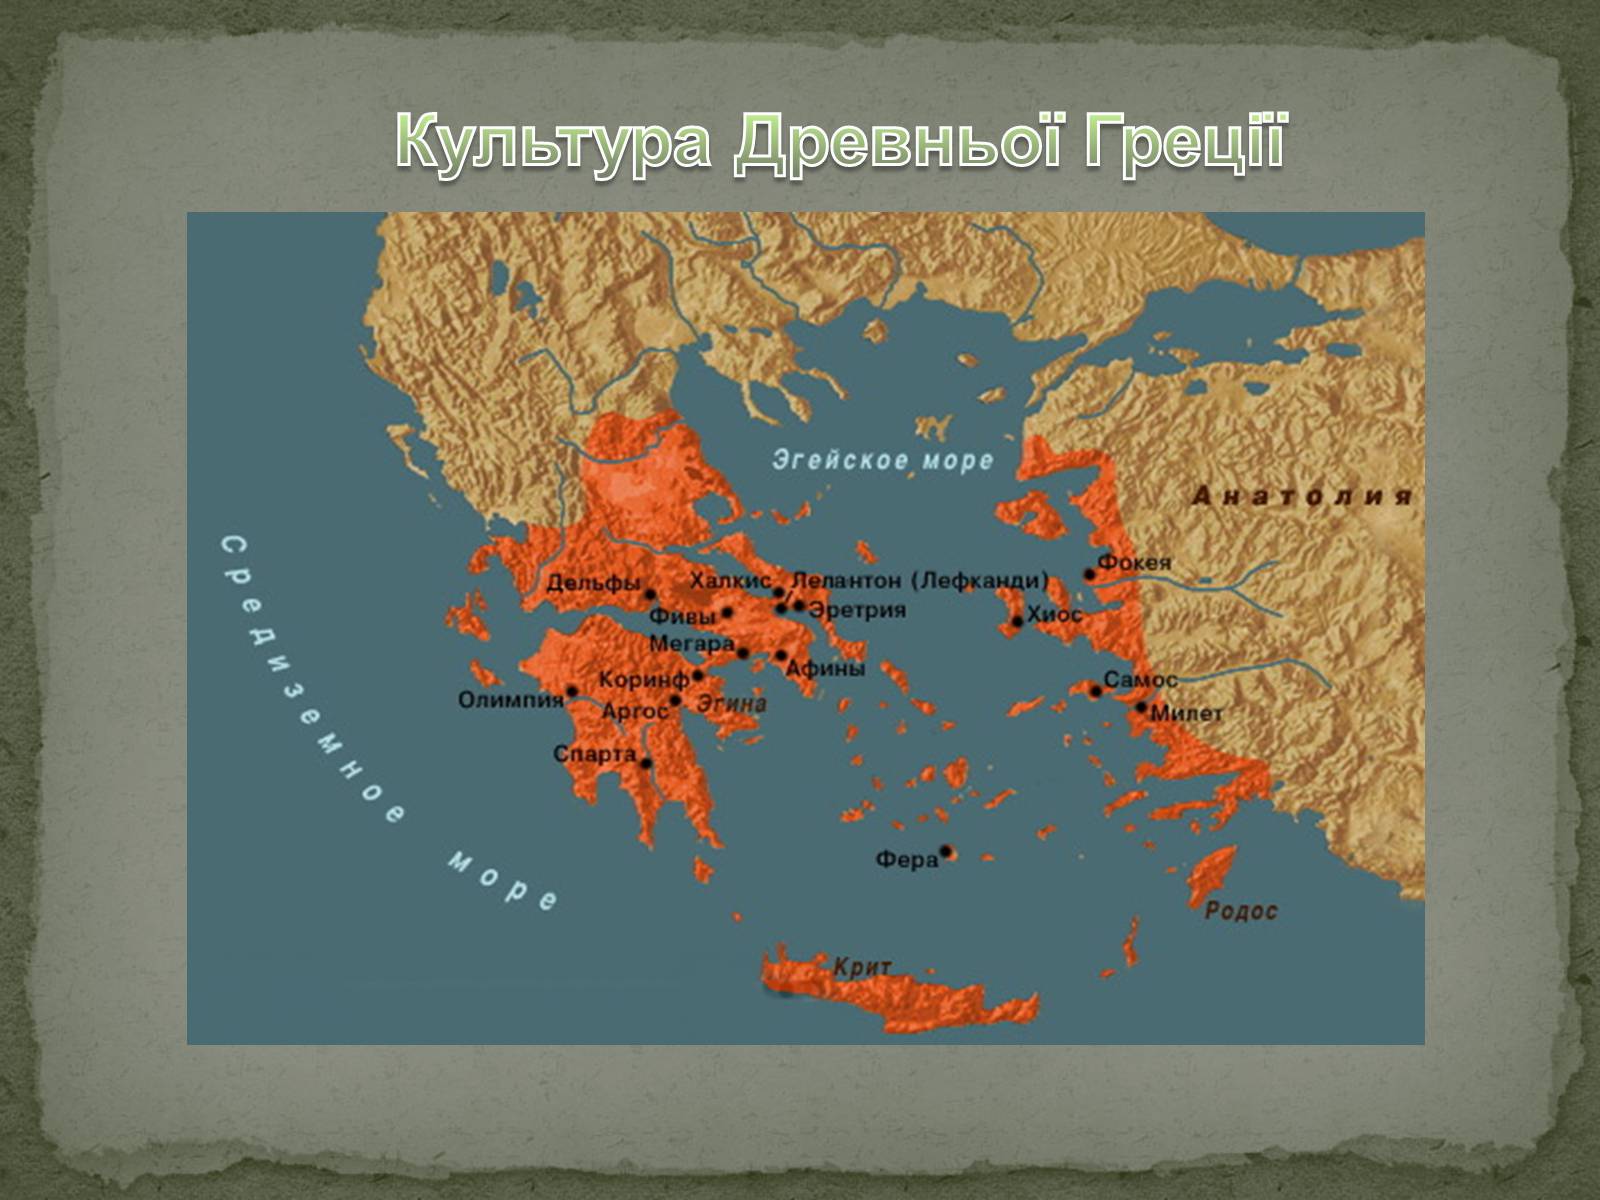 Местоположение спарты. Территория древней Греции на карте. Древняя Греция архаика карта. Карта древней Греции гомеровского периода.